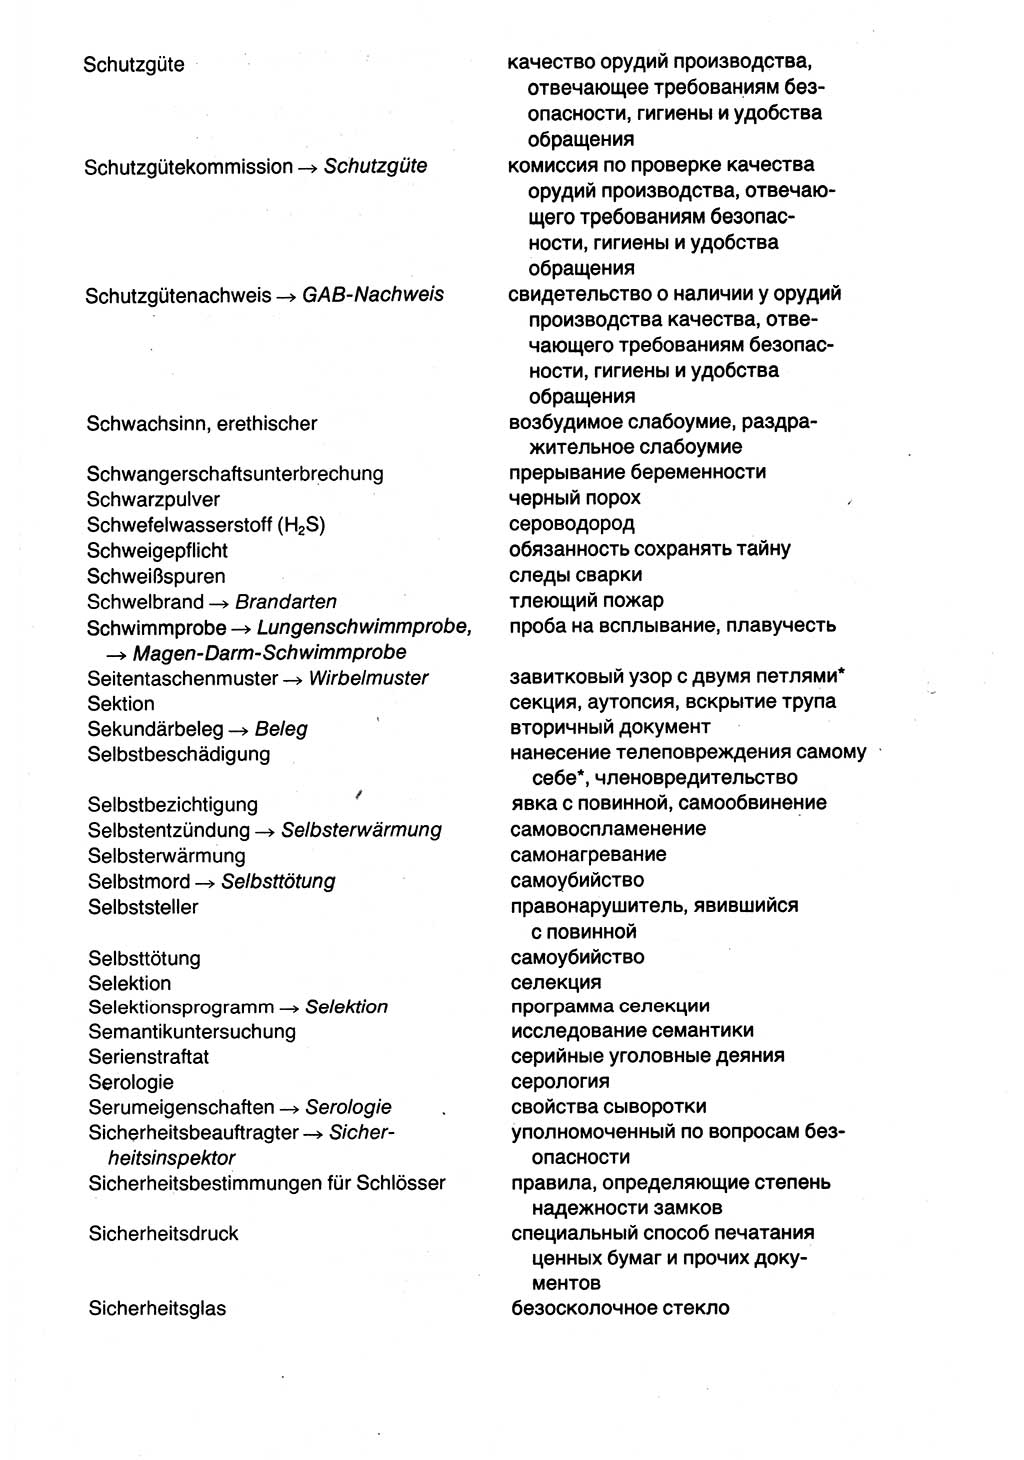 Wörterbuch der sozialistischen Kriminalistik [Deutsche Demokratische Republik (DDR)] 1981, Seite 631 (Wb. soz. Krim. DDR 1981, S. 631)